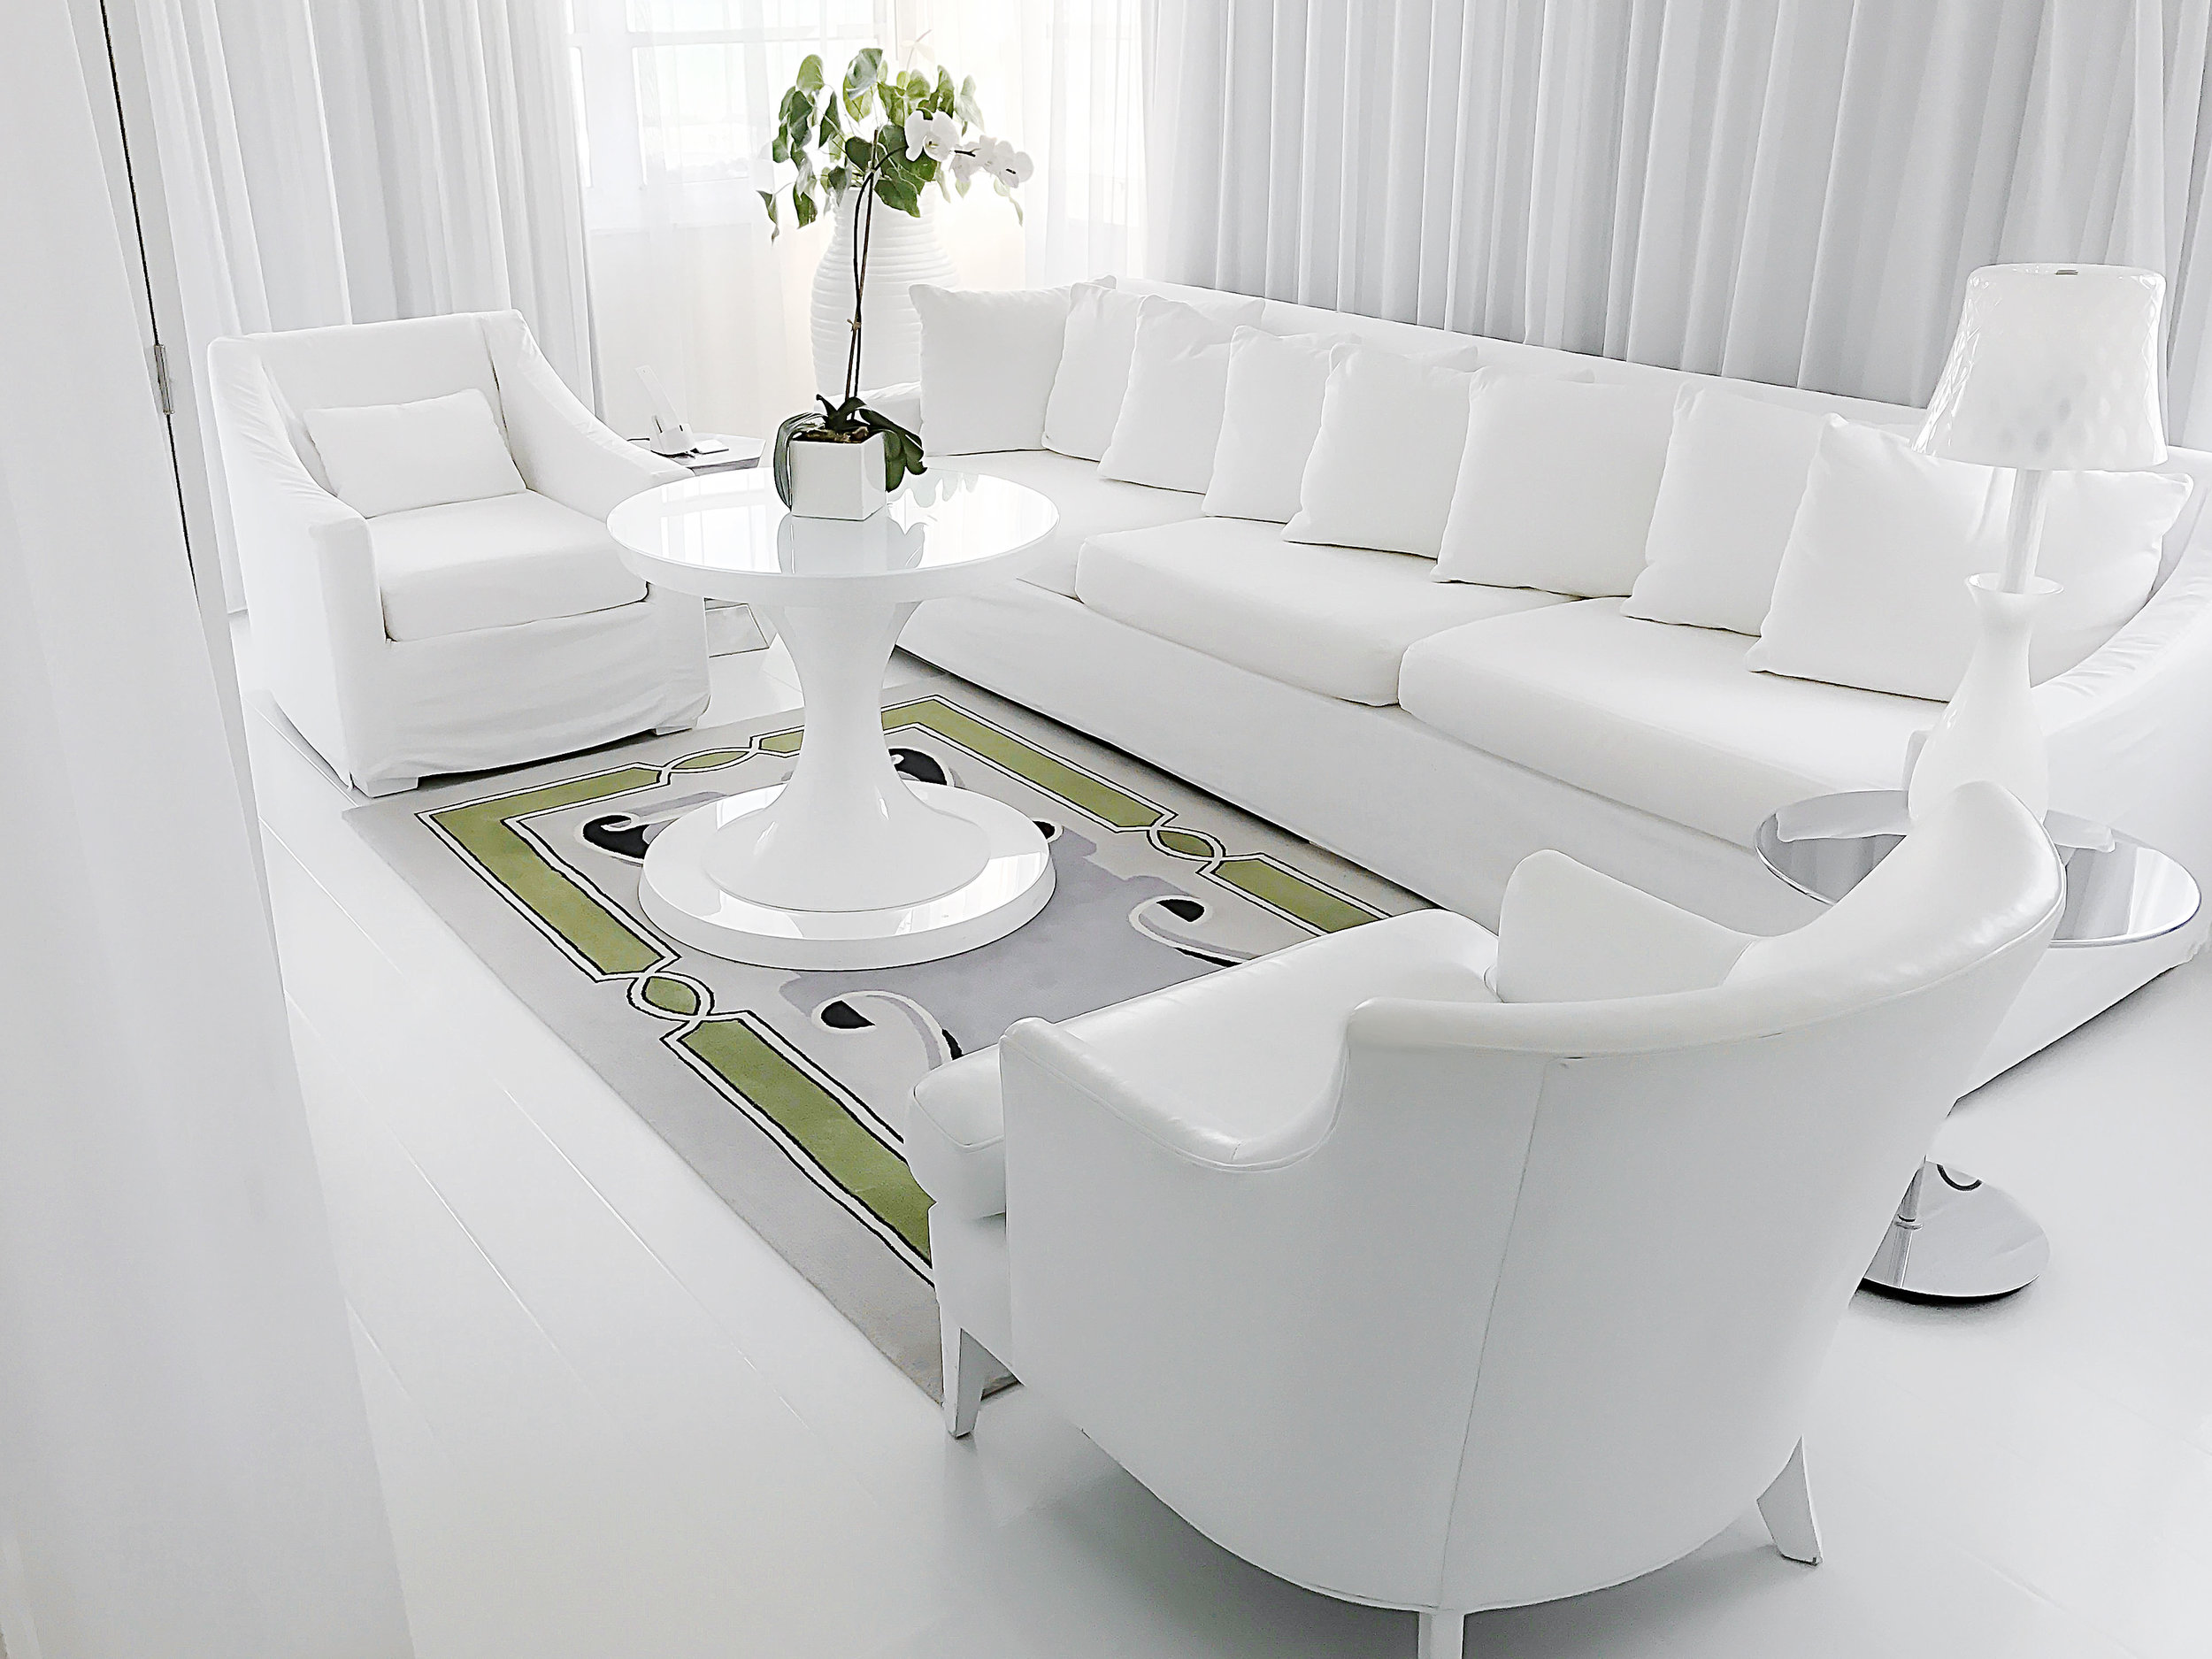 Delano-living-room-interior.jpg